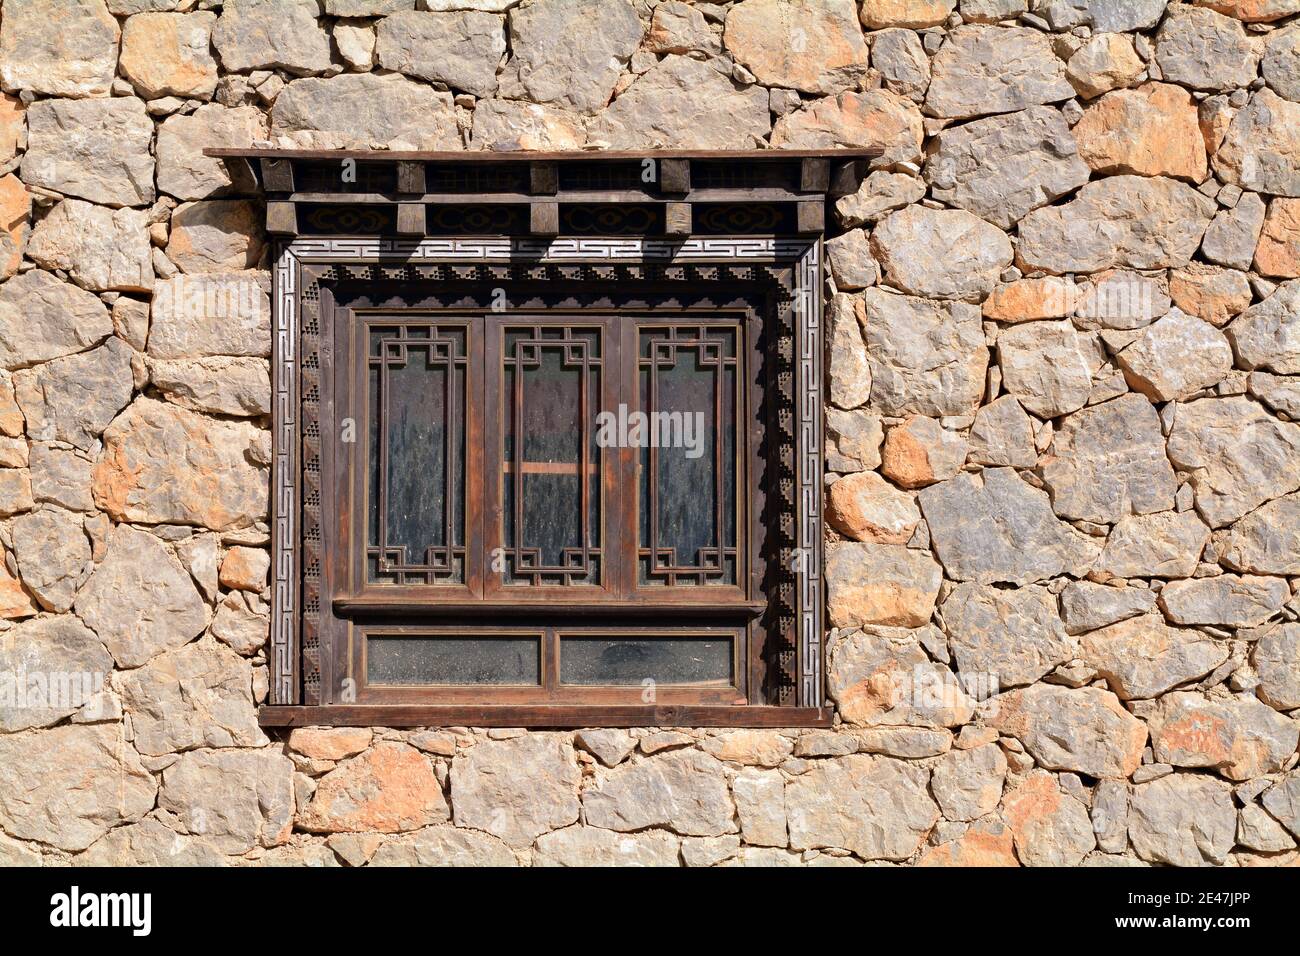 Gemeinsames Design der Architektur in Shangri La Region Yunnan. Diese Art von Fenster kann überall gefunden werden. Stockfoto